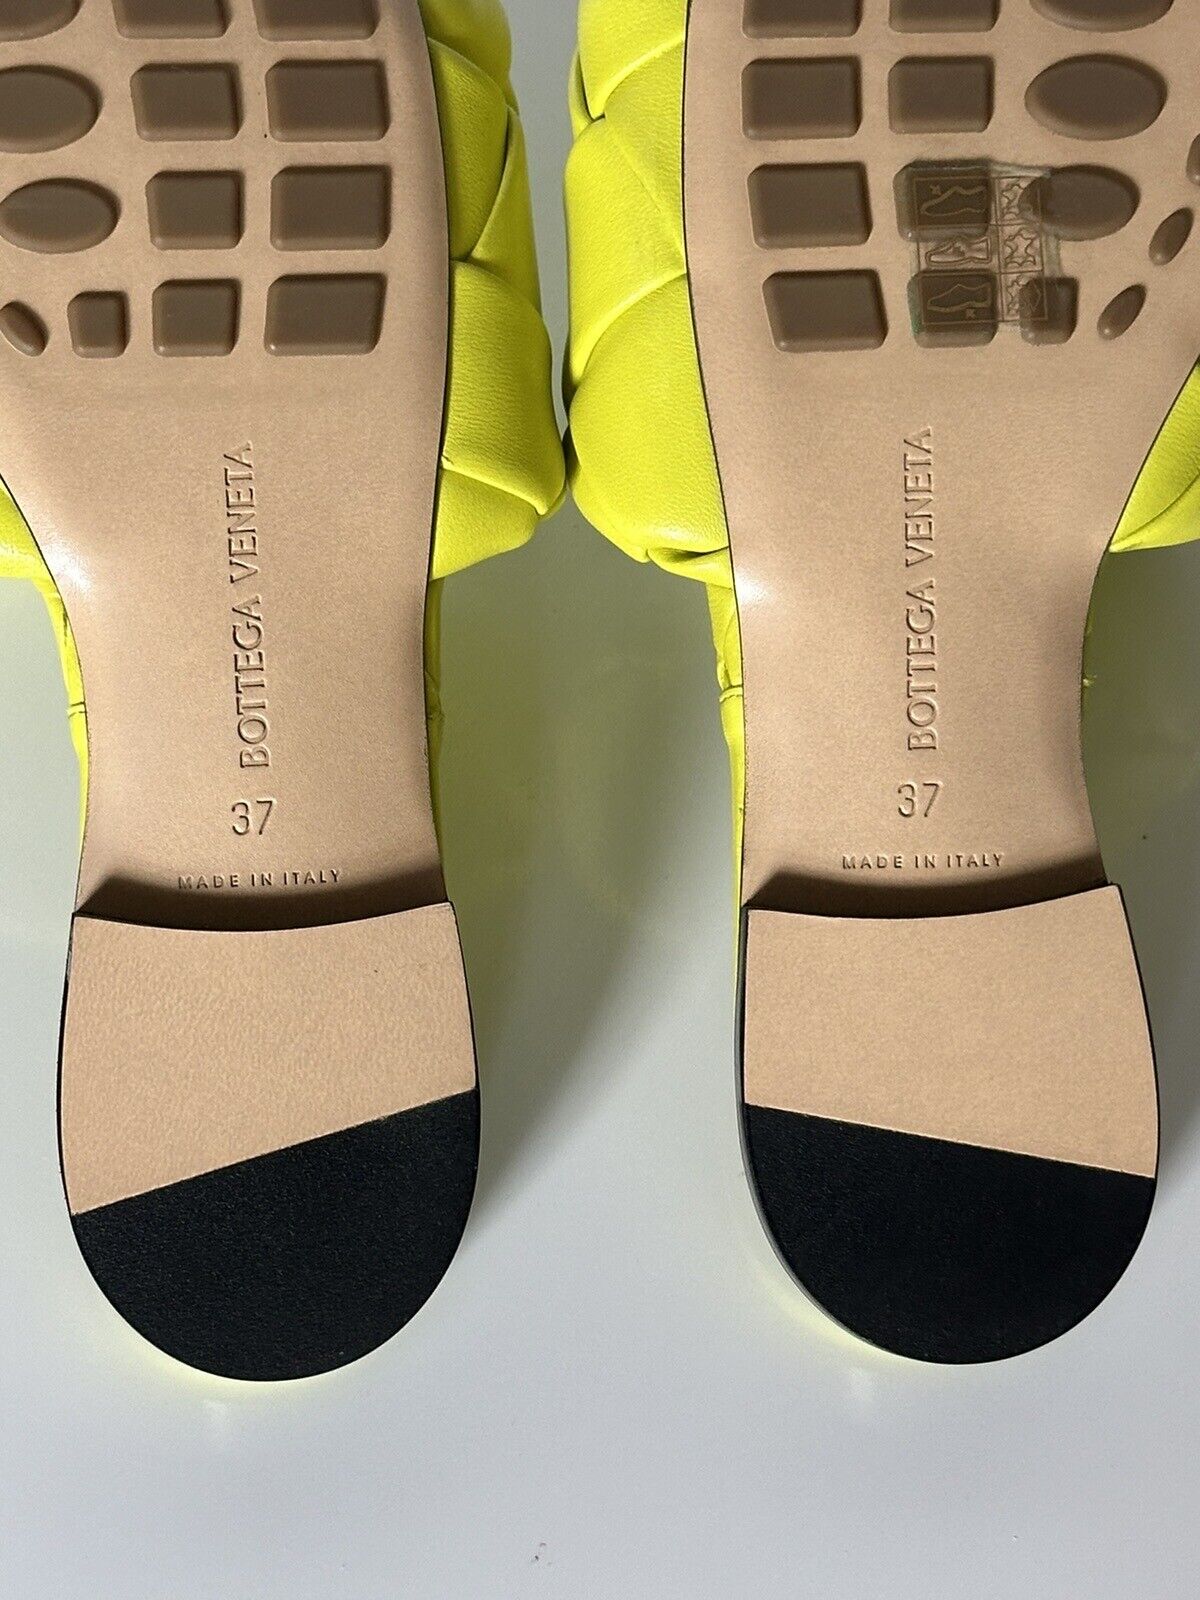 NWT 1350 долларов США Bottega Veneta Желтые лимонные сандалии на плоской подошве 7 США (37 евро) 608853 